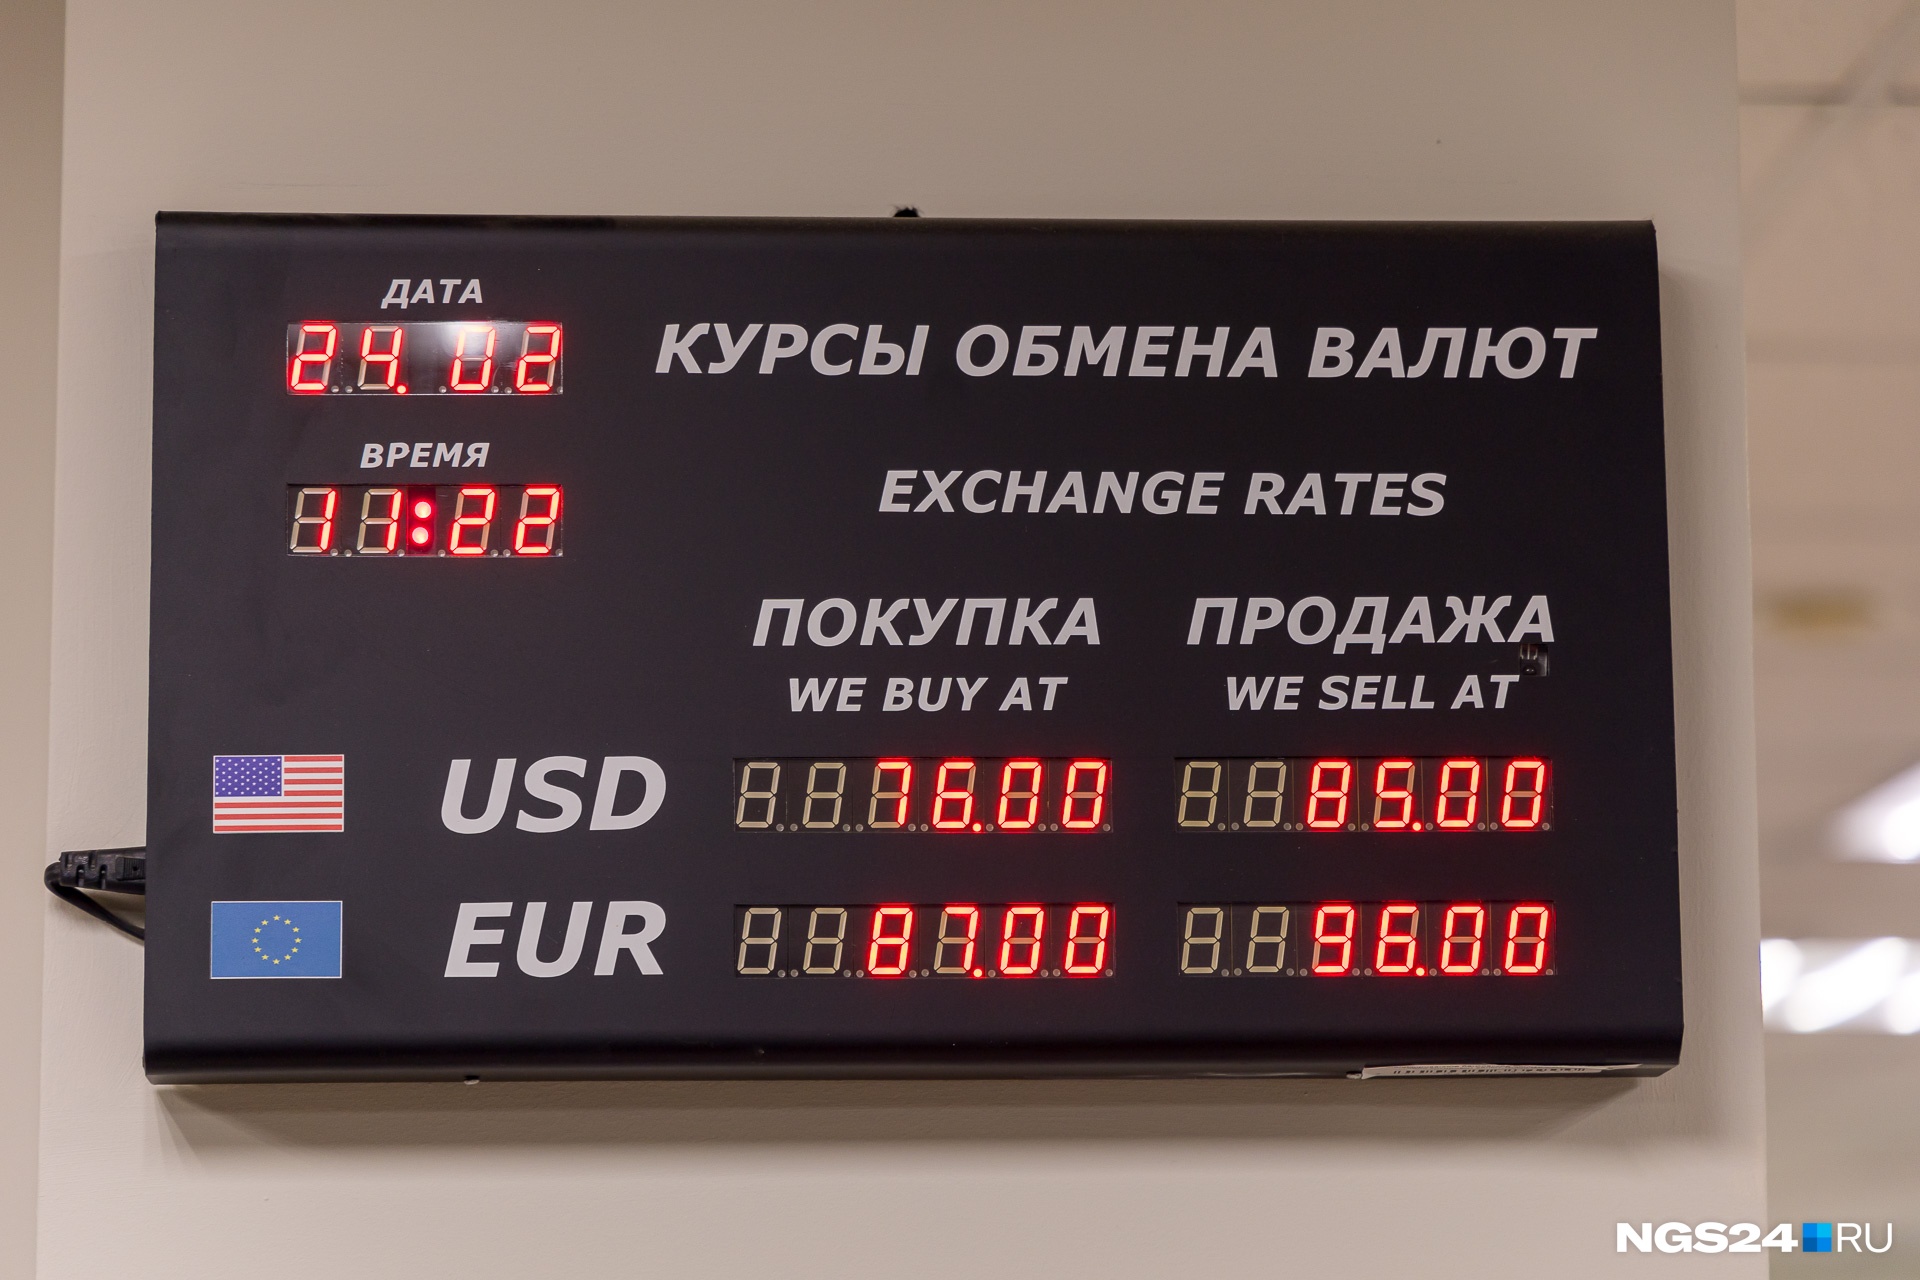 Красноярск выгодно купить доллар банк. Обменник валют. Курсы обмена валют. Обменные курсы валют. Размен валюты.